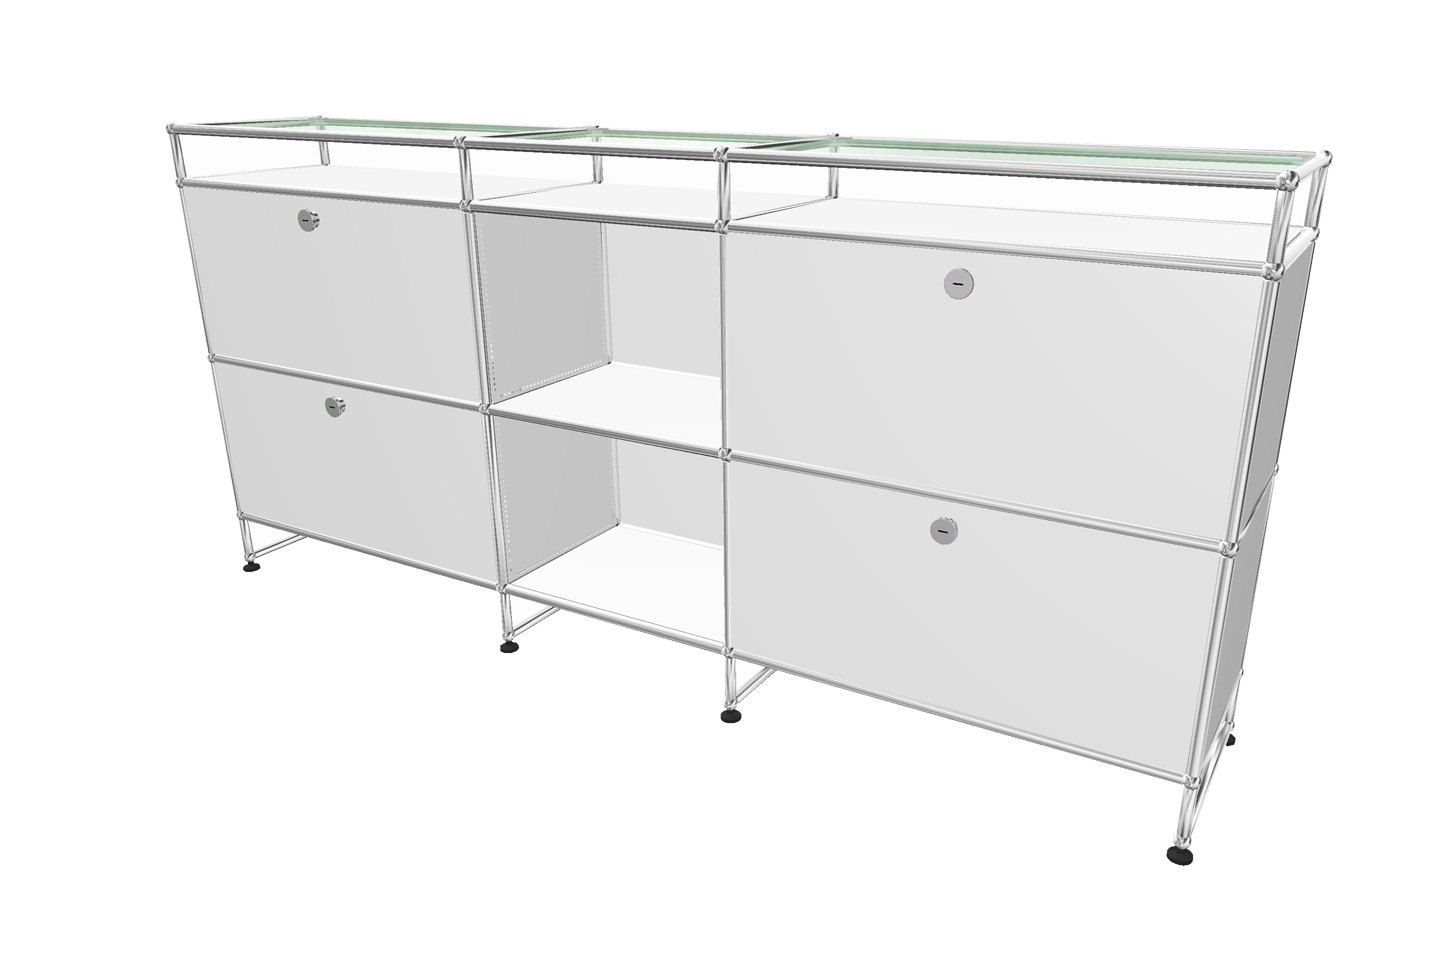 USM Haller sideboard with glass shelves